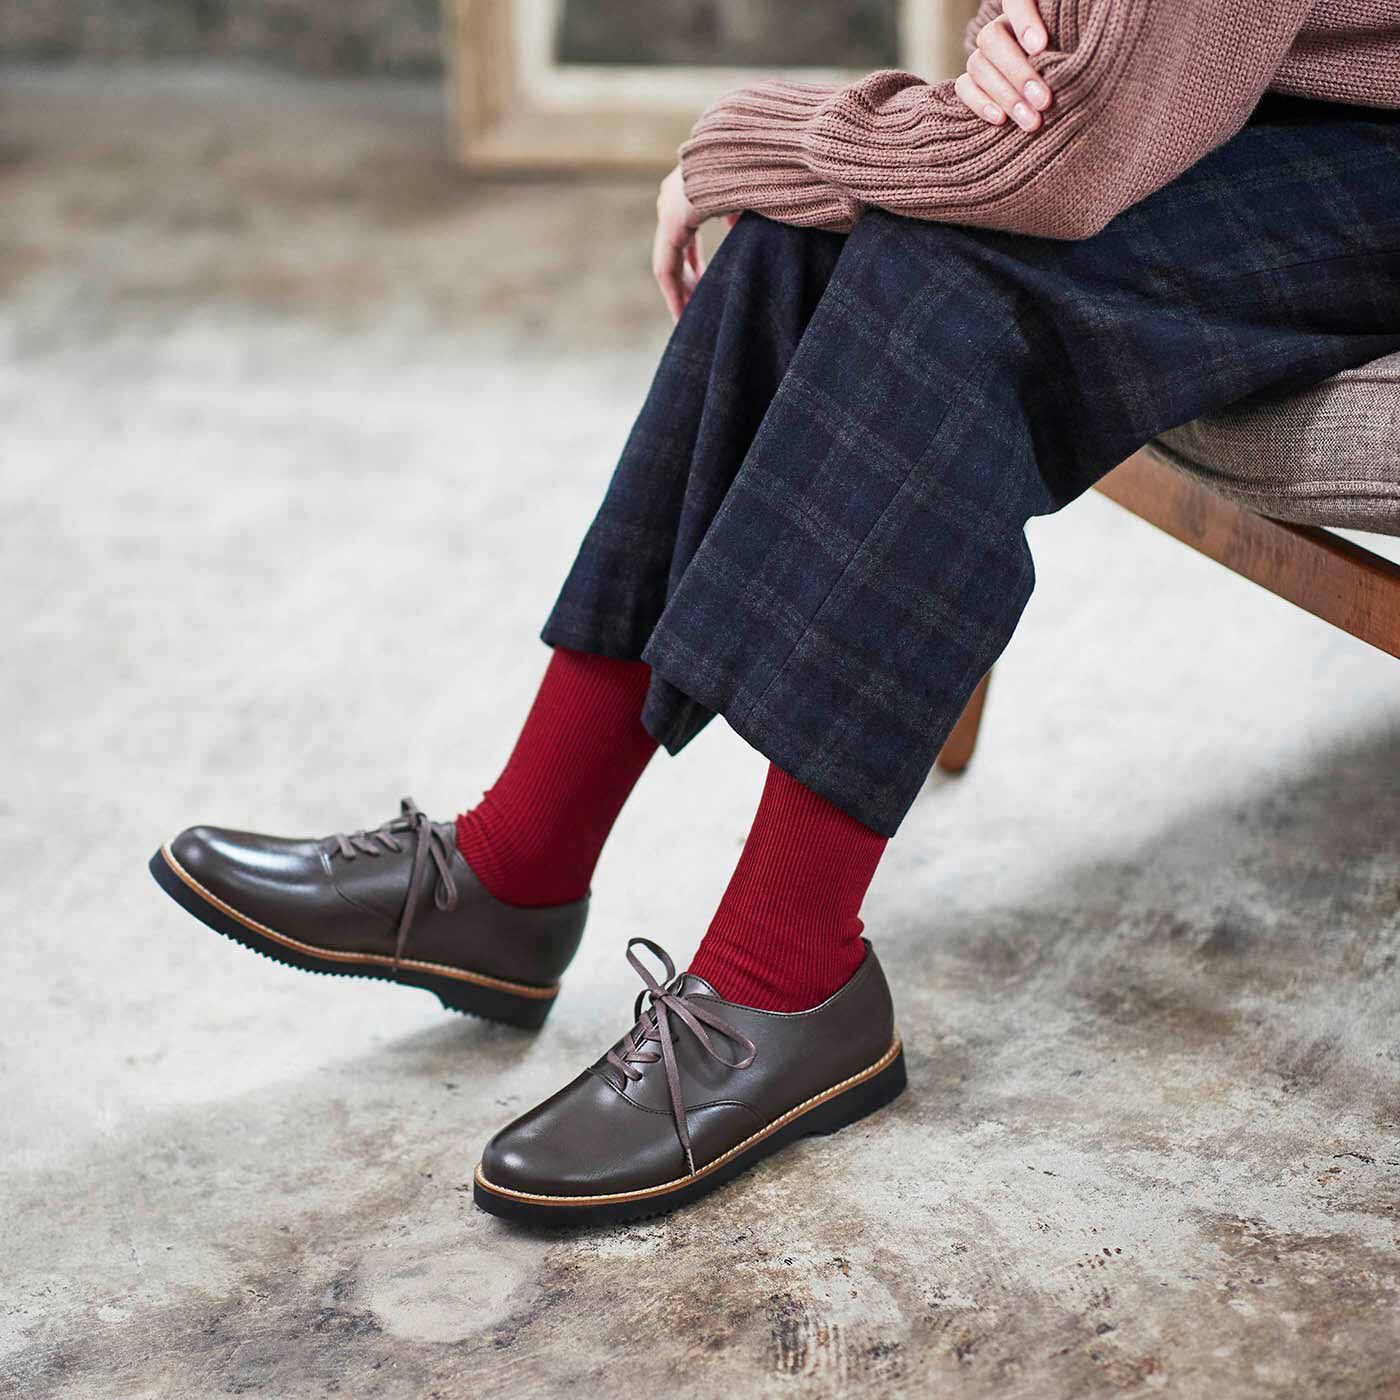 ＆Stories|長田の靴職人が作った 職人本革のポストマンシューズ〈ダークブラウン〉|甲高・幅広の足もすっぽり包み込み、クッション性のある履き心地で歩きやすさもばっちり。